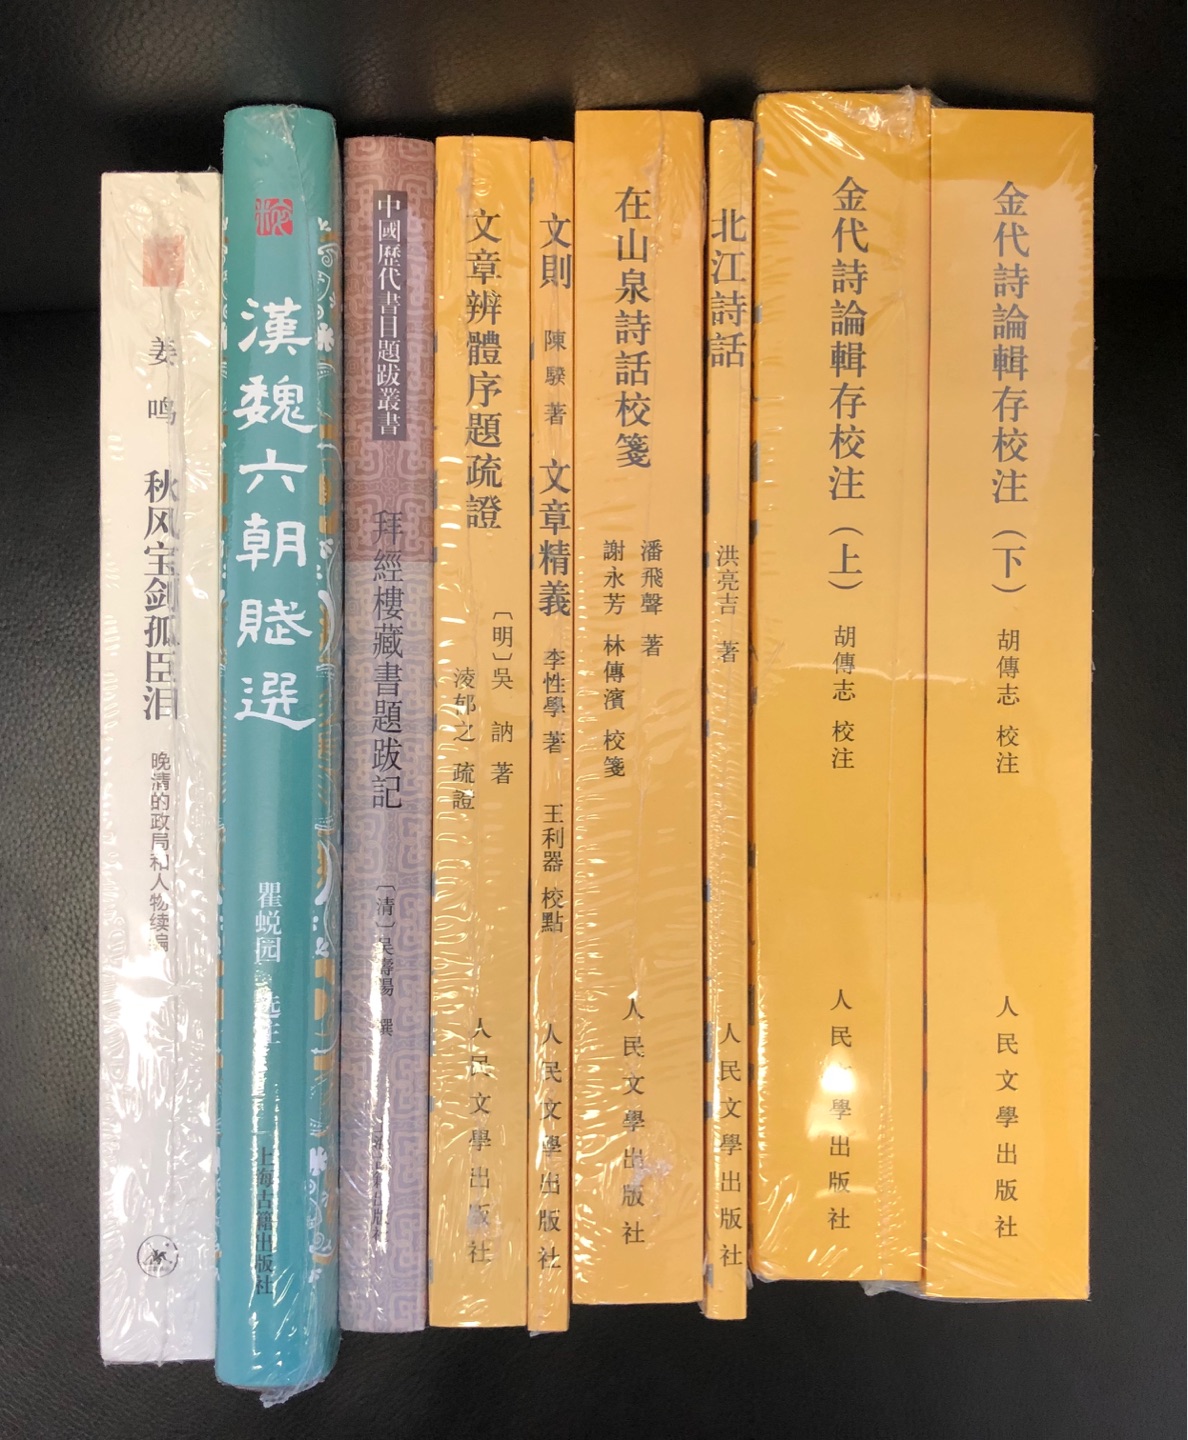 上海古籍出版社出品的中国历代书目题跋丛书，印制很清晰，装帧也还不错。